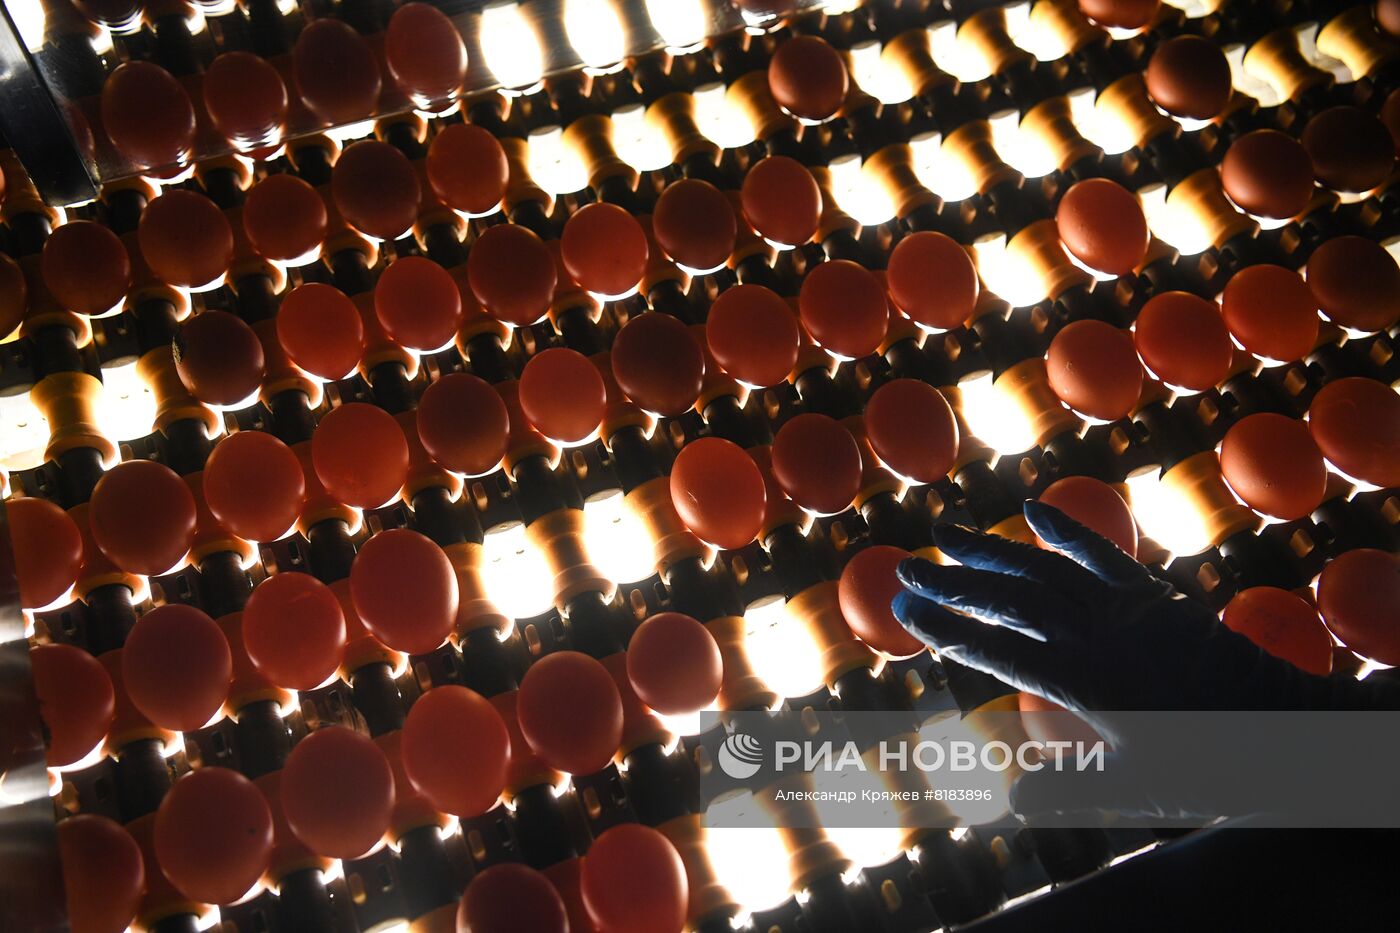 Производство яиц и мяса птицы в Новосибирской области